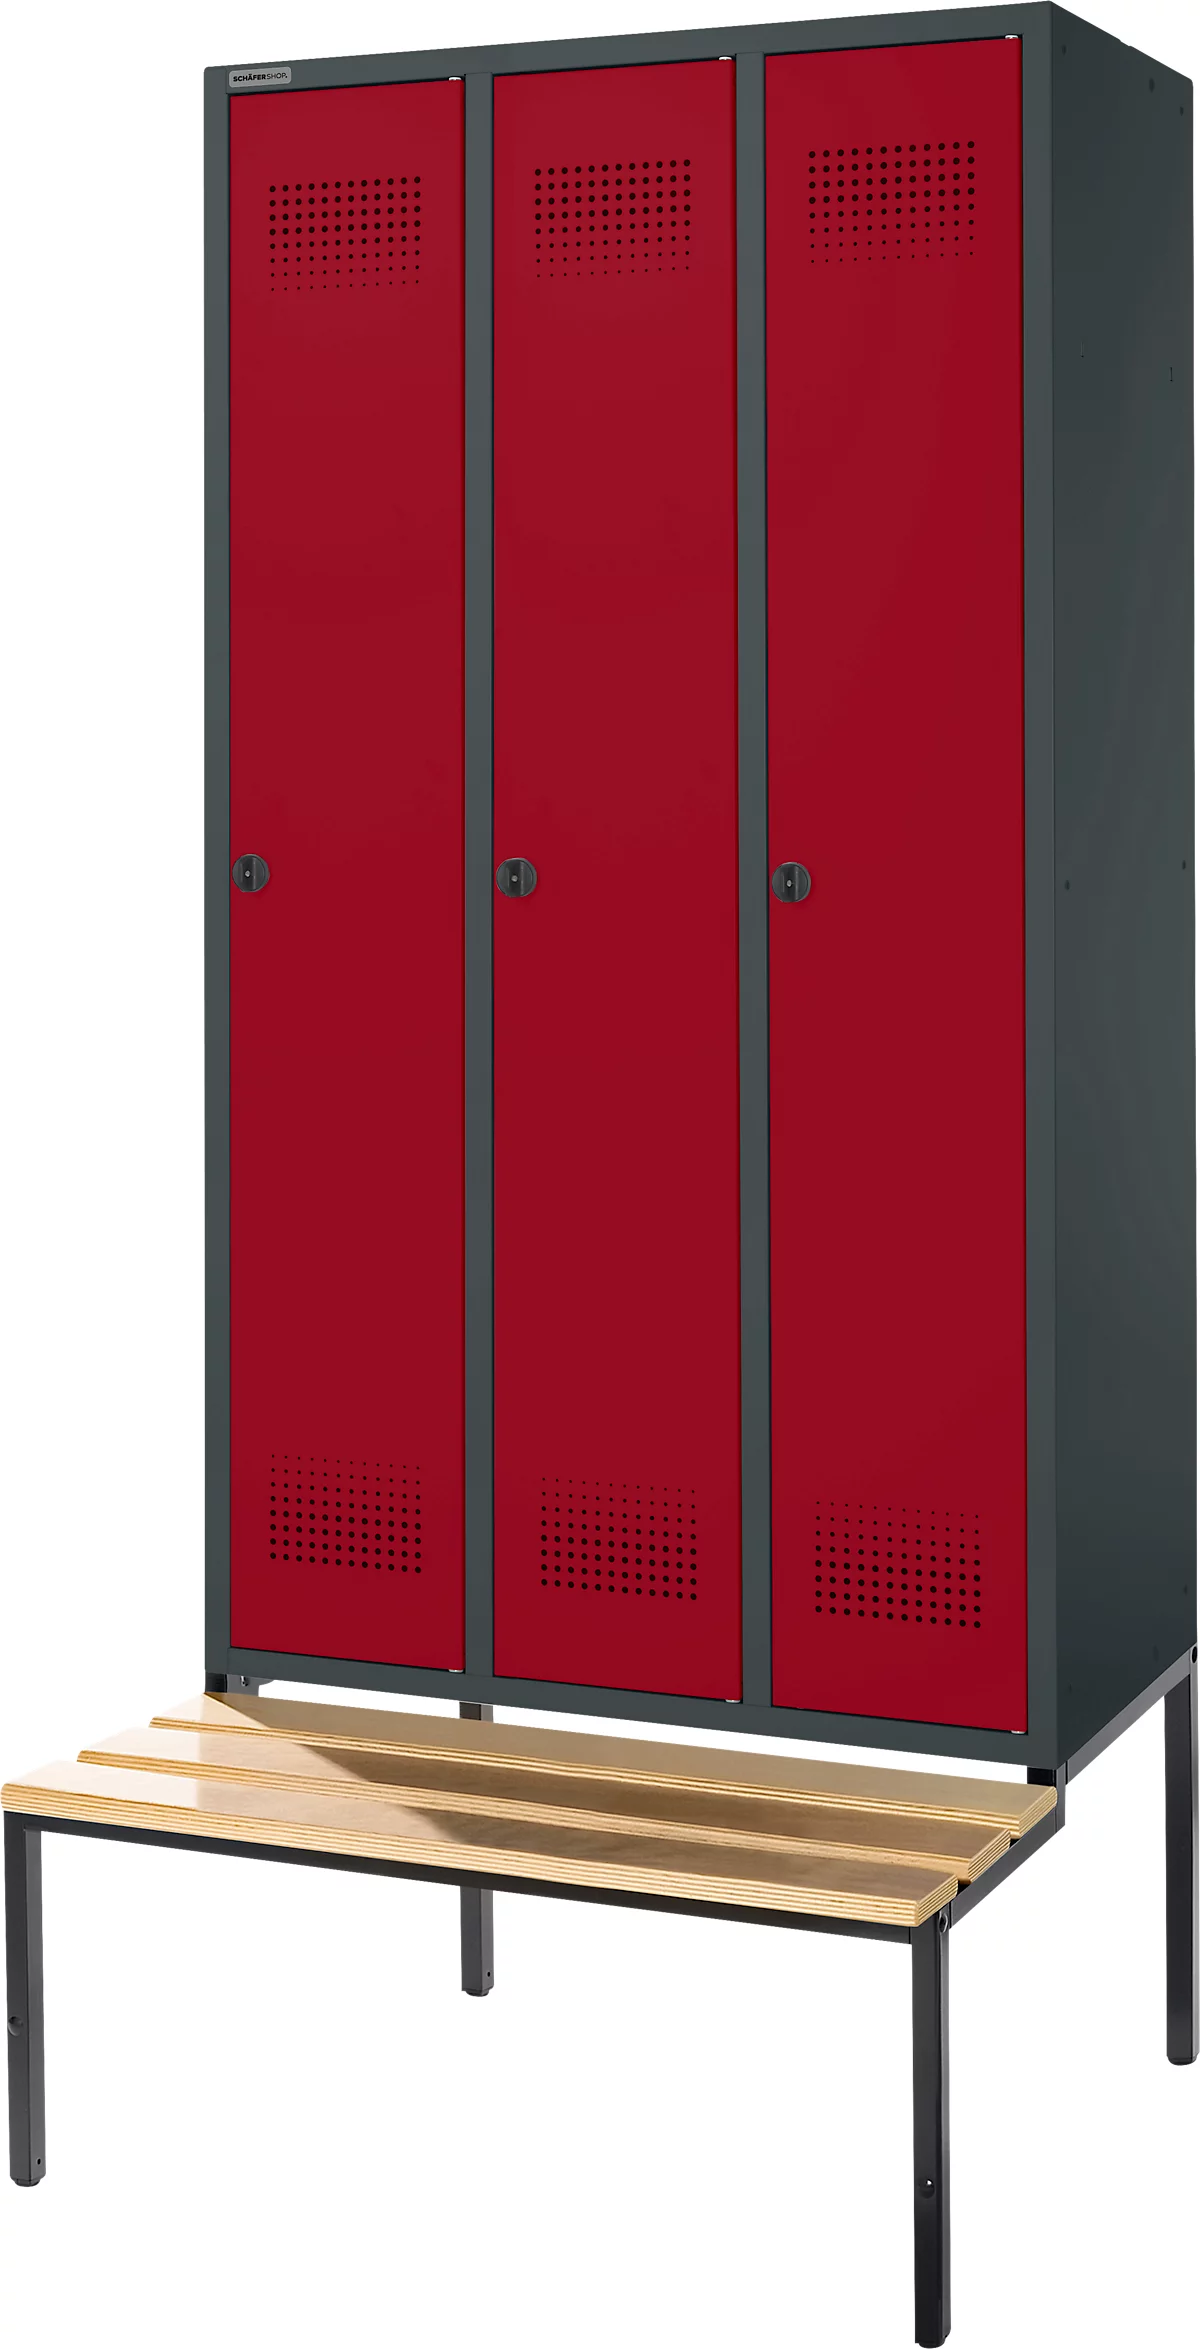 Schäfer Shop Genius Taquilla con banco, 3 compartimentos, anchura compartimento 300 mm, cierre de pasador giratorio de seguridad, antracita/rojo rubí